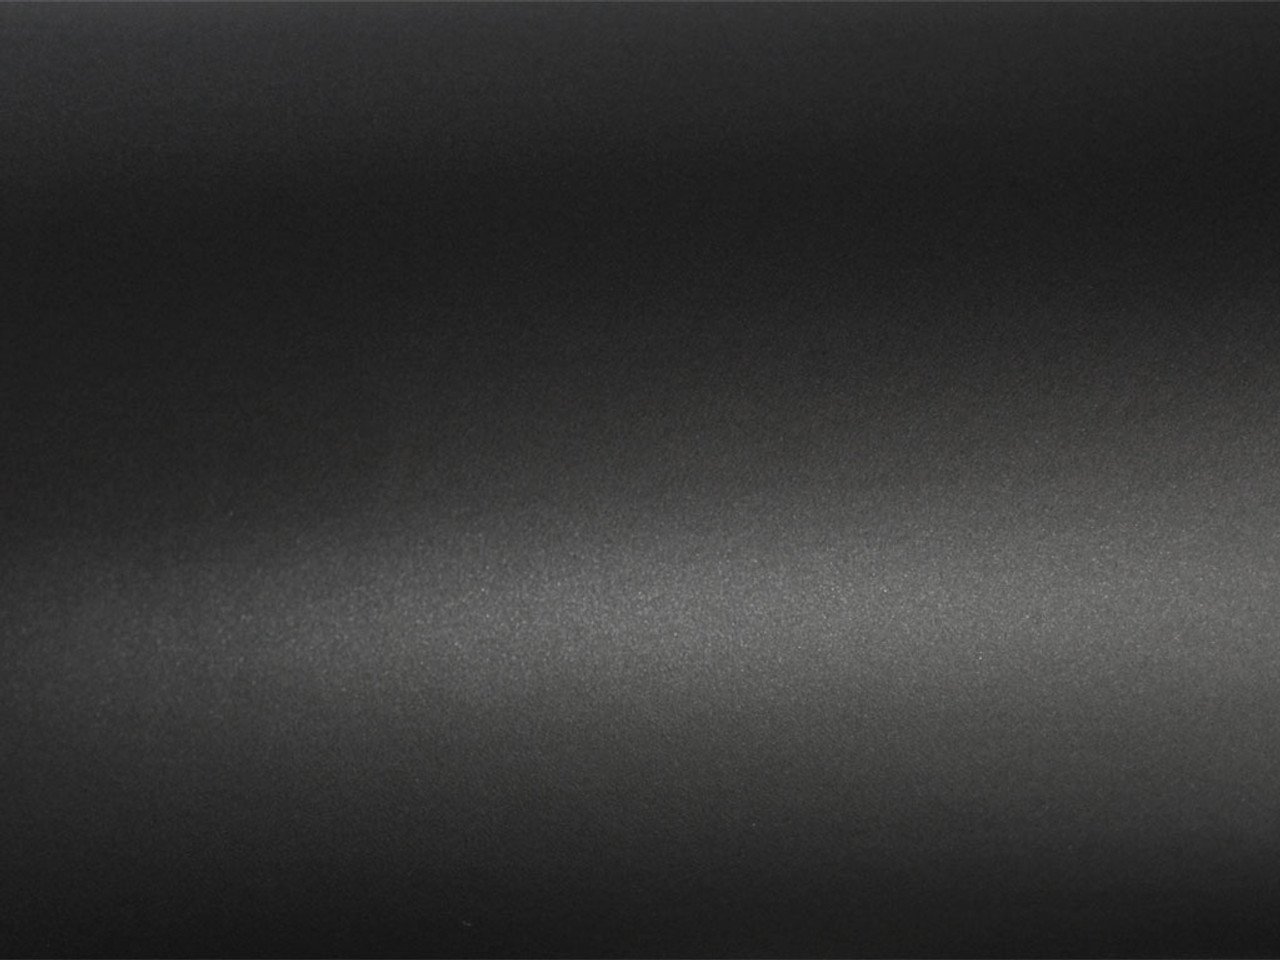 Покрытия стали черные. Алюминиевый металлик матовый э 6348а0100. Черный матовый цвет. Черная матовая поверхность. Черный матовый пластик текстура.